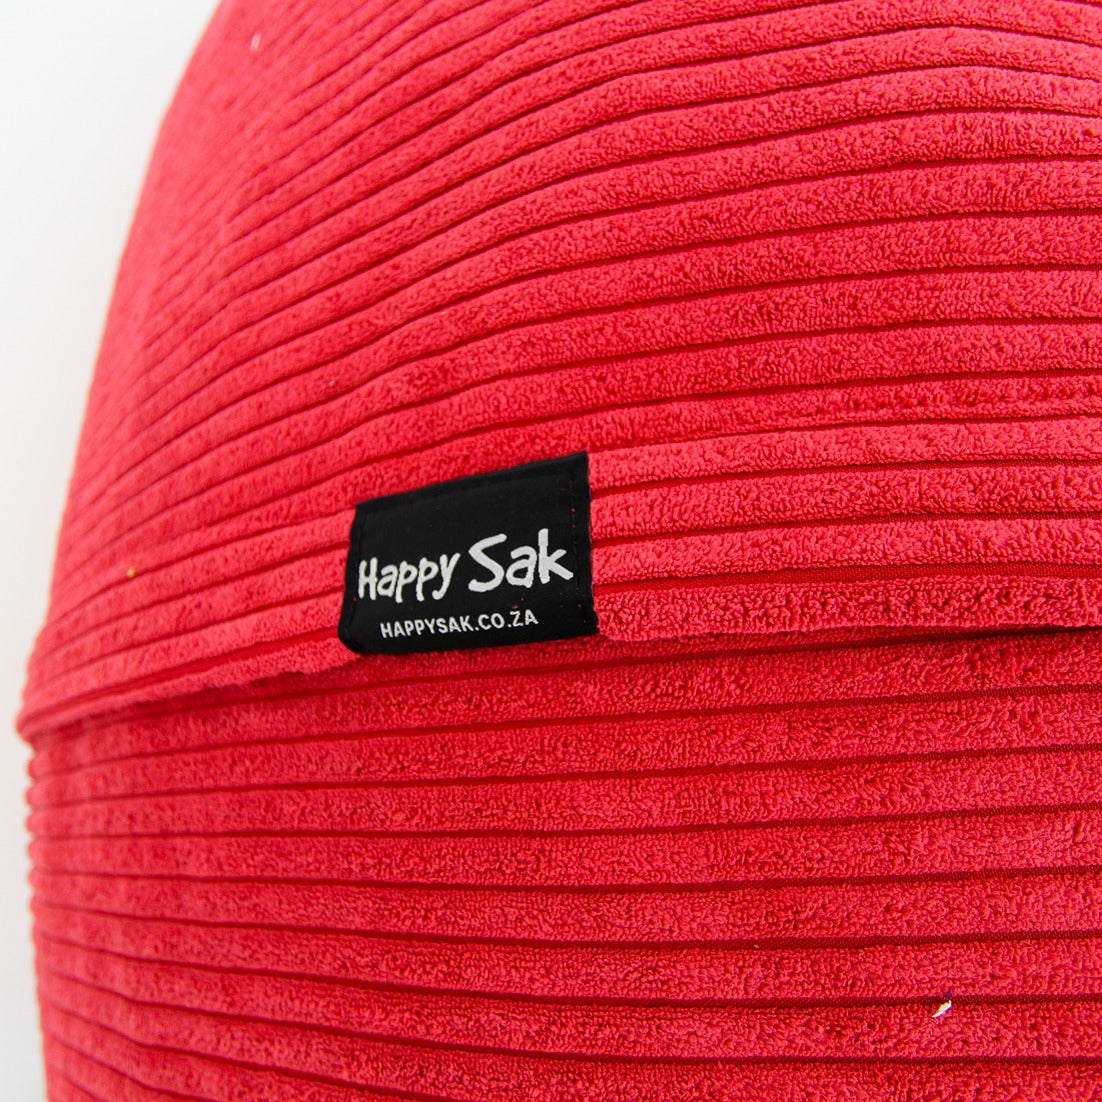 XXXL Sak Red Corduroy Cover - Happy Sak SA